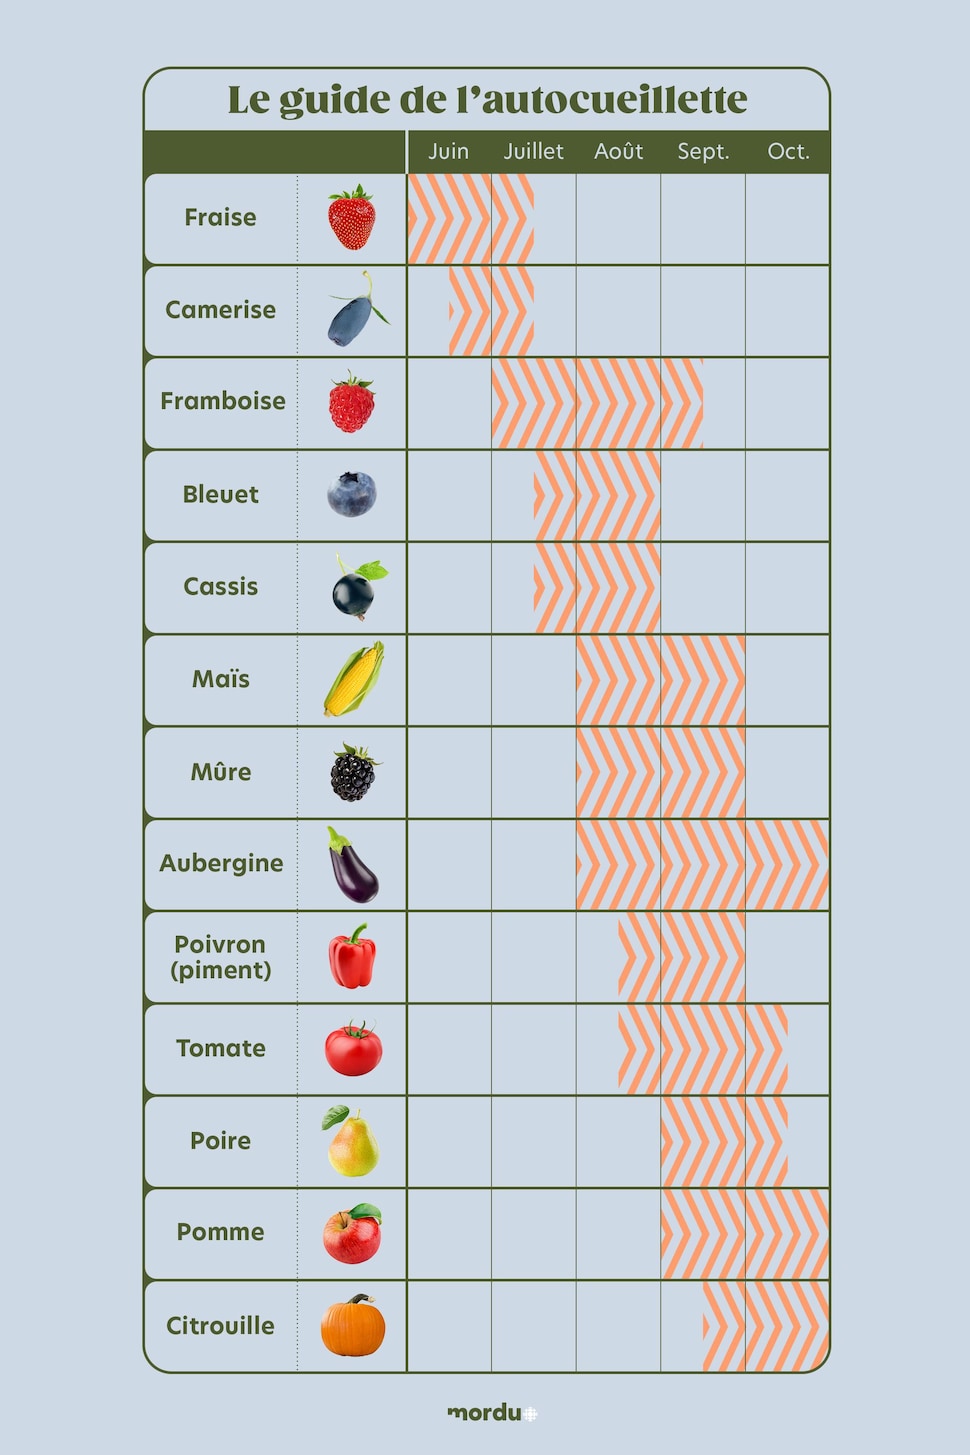 Une liste de 13 fruits et légumes et leur saison de récolte approximative en autocueillette.